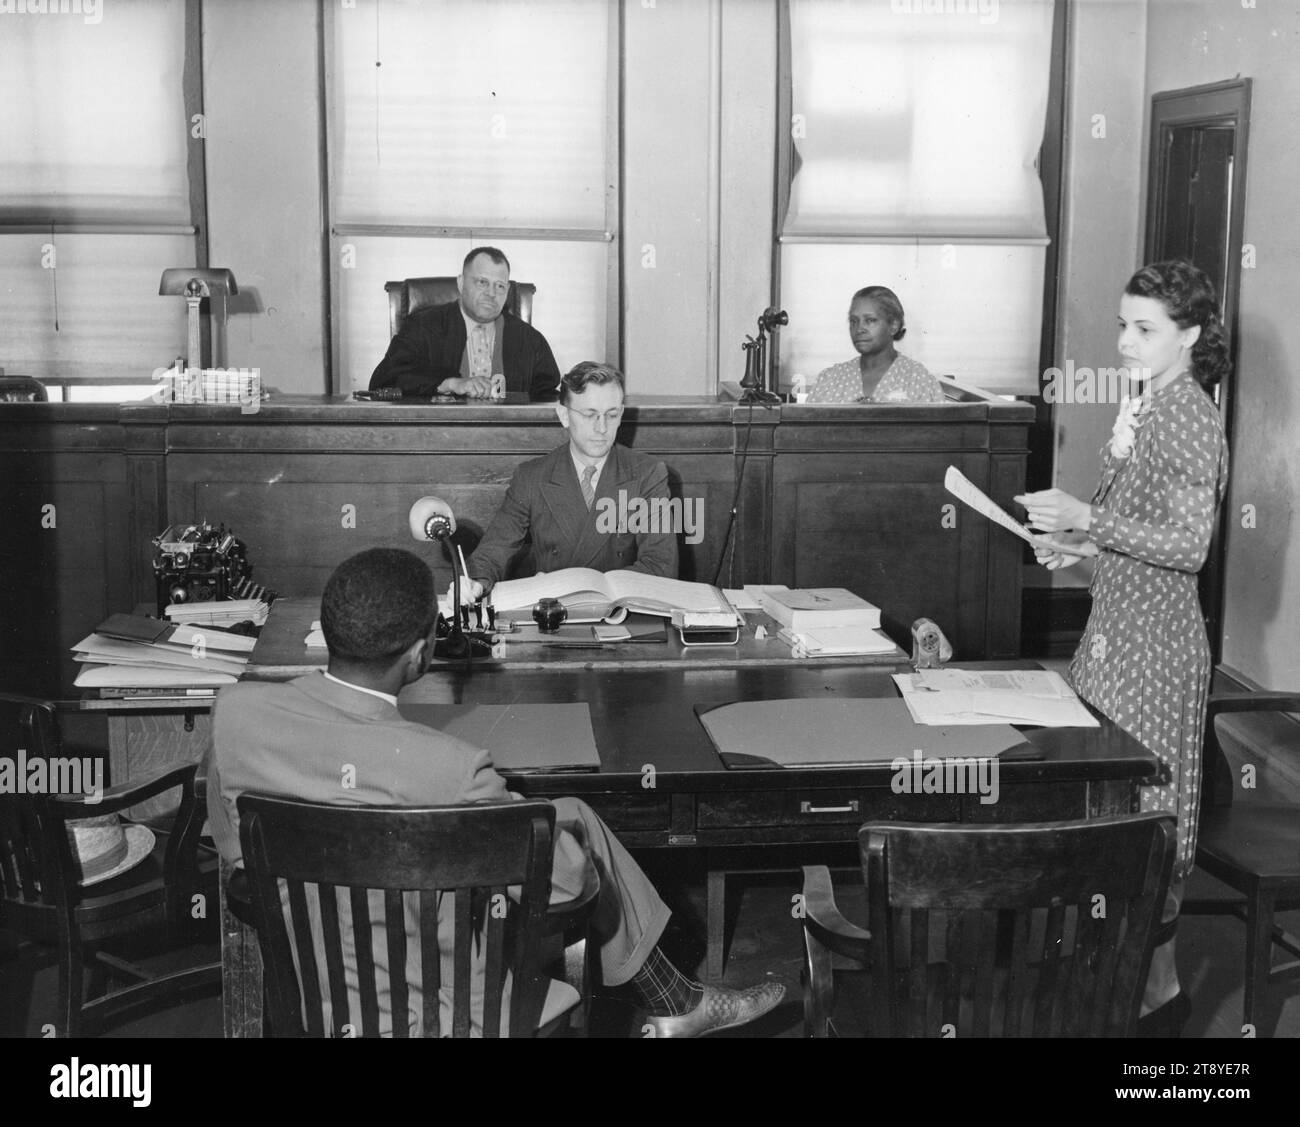 Gerichtssaal-Szene einer Anwältin, die sich für den Fall einsetzt. Minna Green (rechts stehend) von der General Foods Corporation Law Department, ist Mitglied der New York Bar Association und hat um 1945 einen Abschluss an der Fordham Law School in New York, New York, New York. Foto: Frauenbüro/Arbeitsministerium Stockfoto